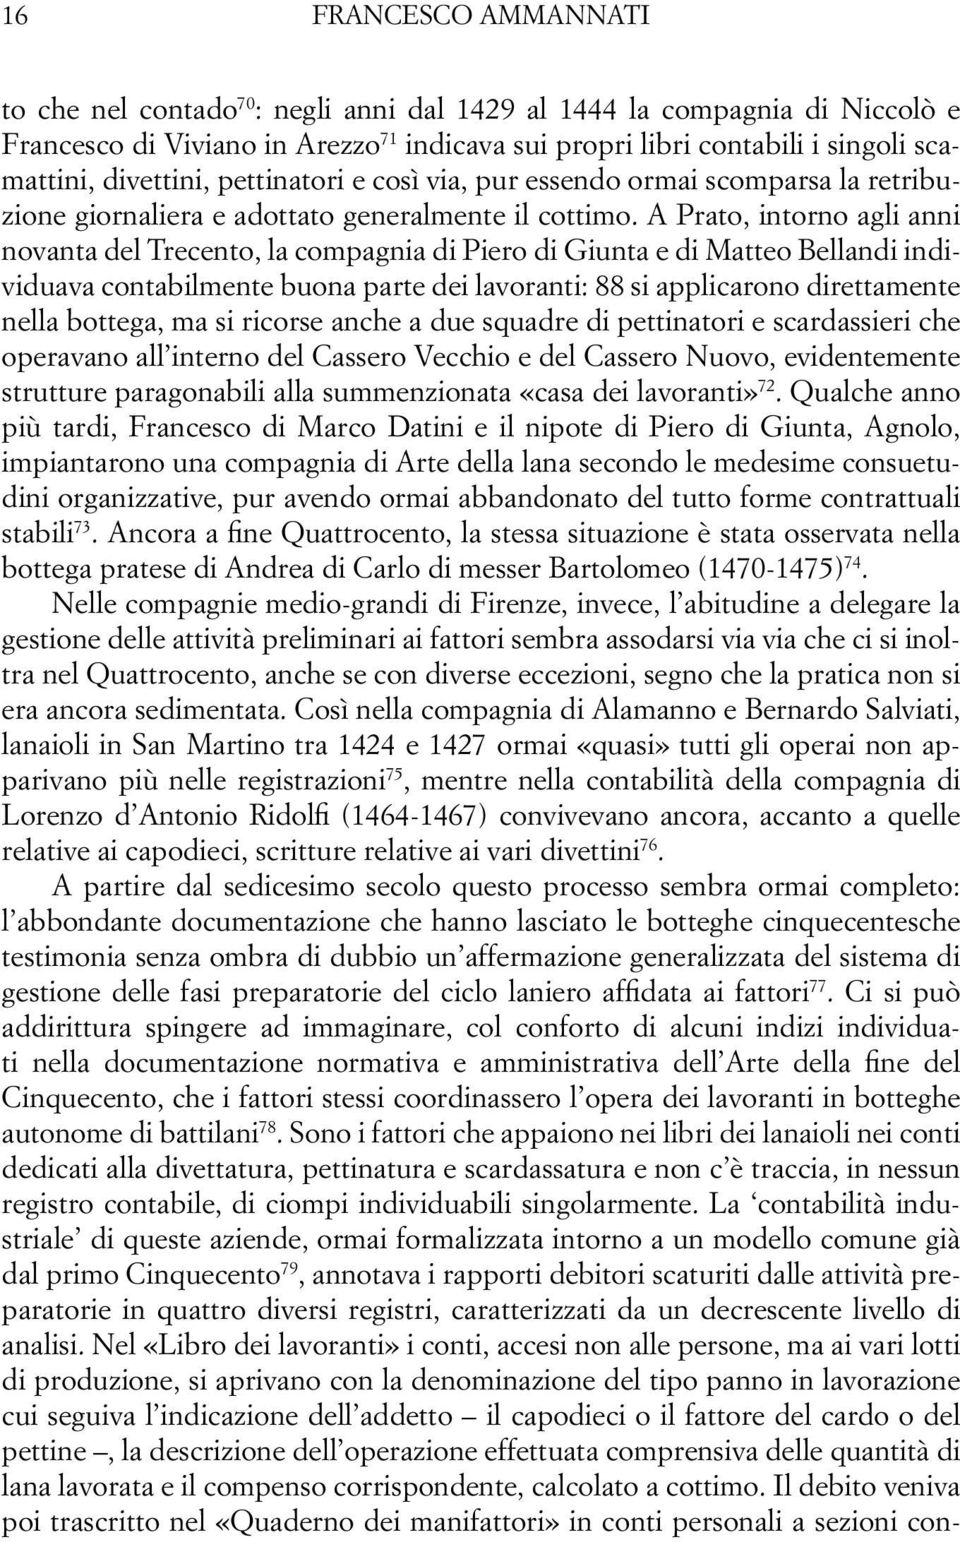 A Prato, intorno agli anni novanta del Trecento, la compagnia di Piero di Giunta e di Matteo Bellandi individuava contabilmente buona parte dei lavoranti: 88 si applicarono direttamente nella